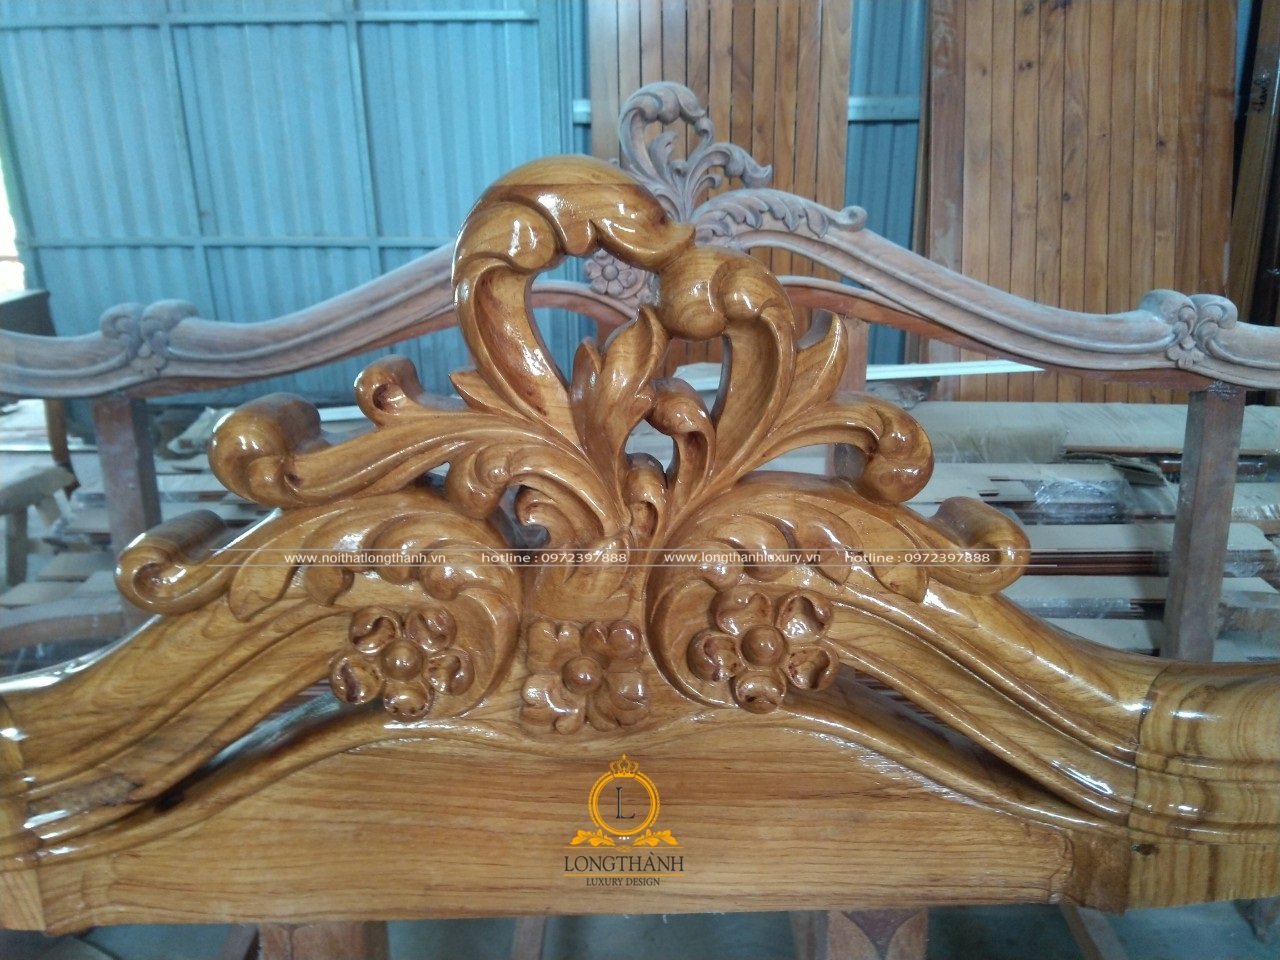 Sản phẩm gỗ đã được sơn lót inchem tại xưởng gỗ nội thất Long Thành